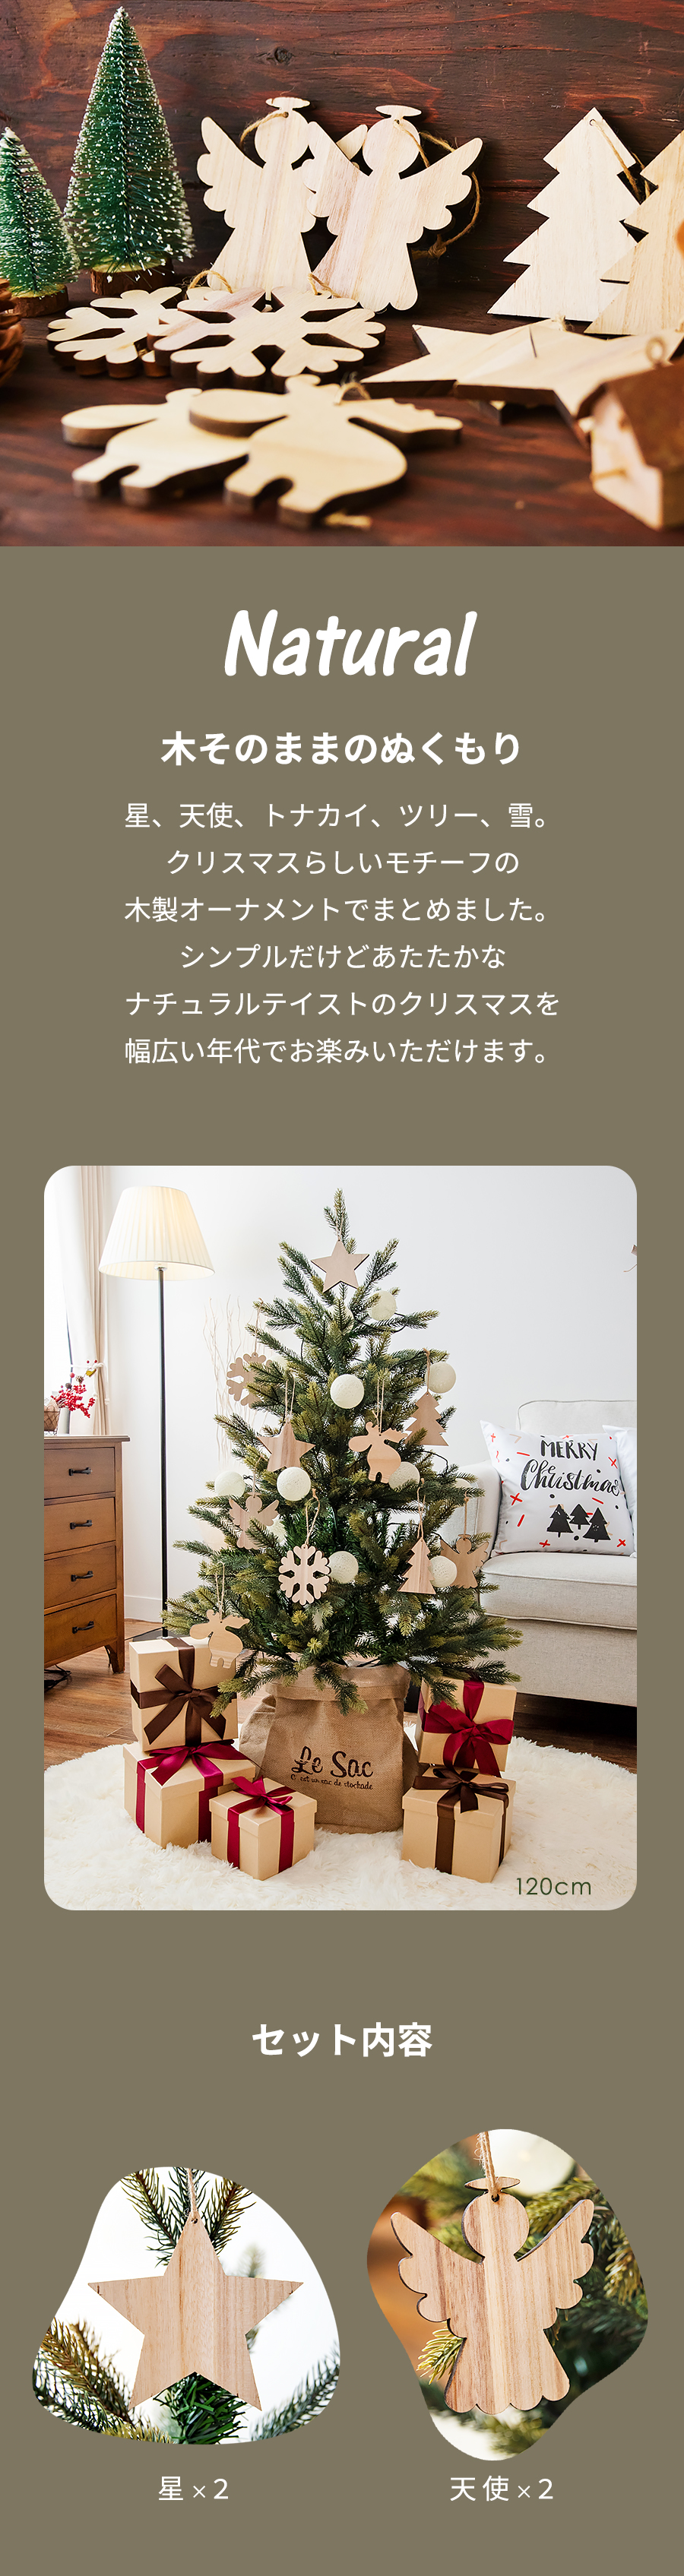 クリスマスツリー 120cm 樅 北欧 おしゃれ led オーナメント 飾り 